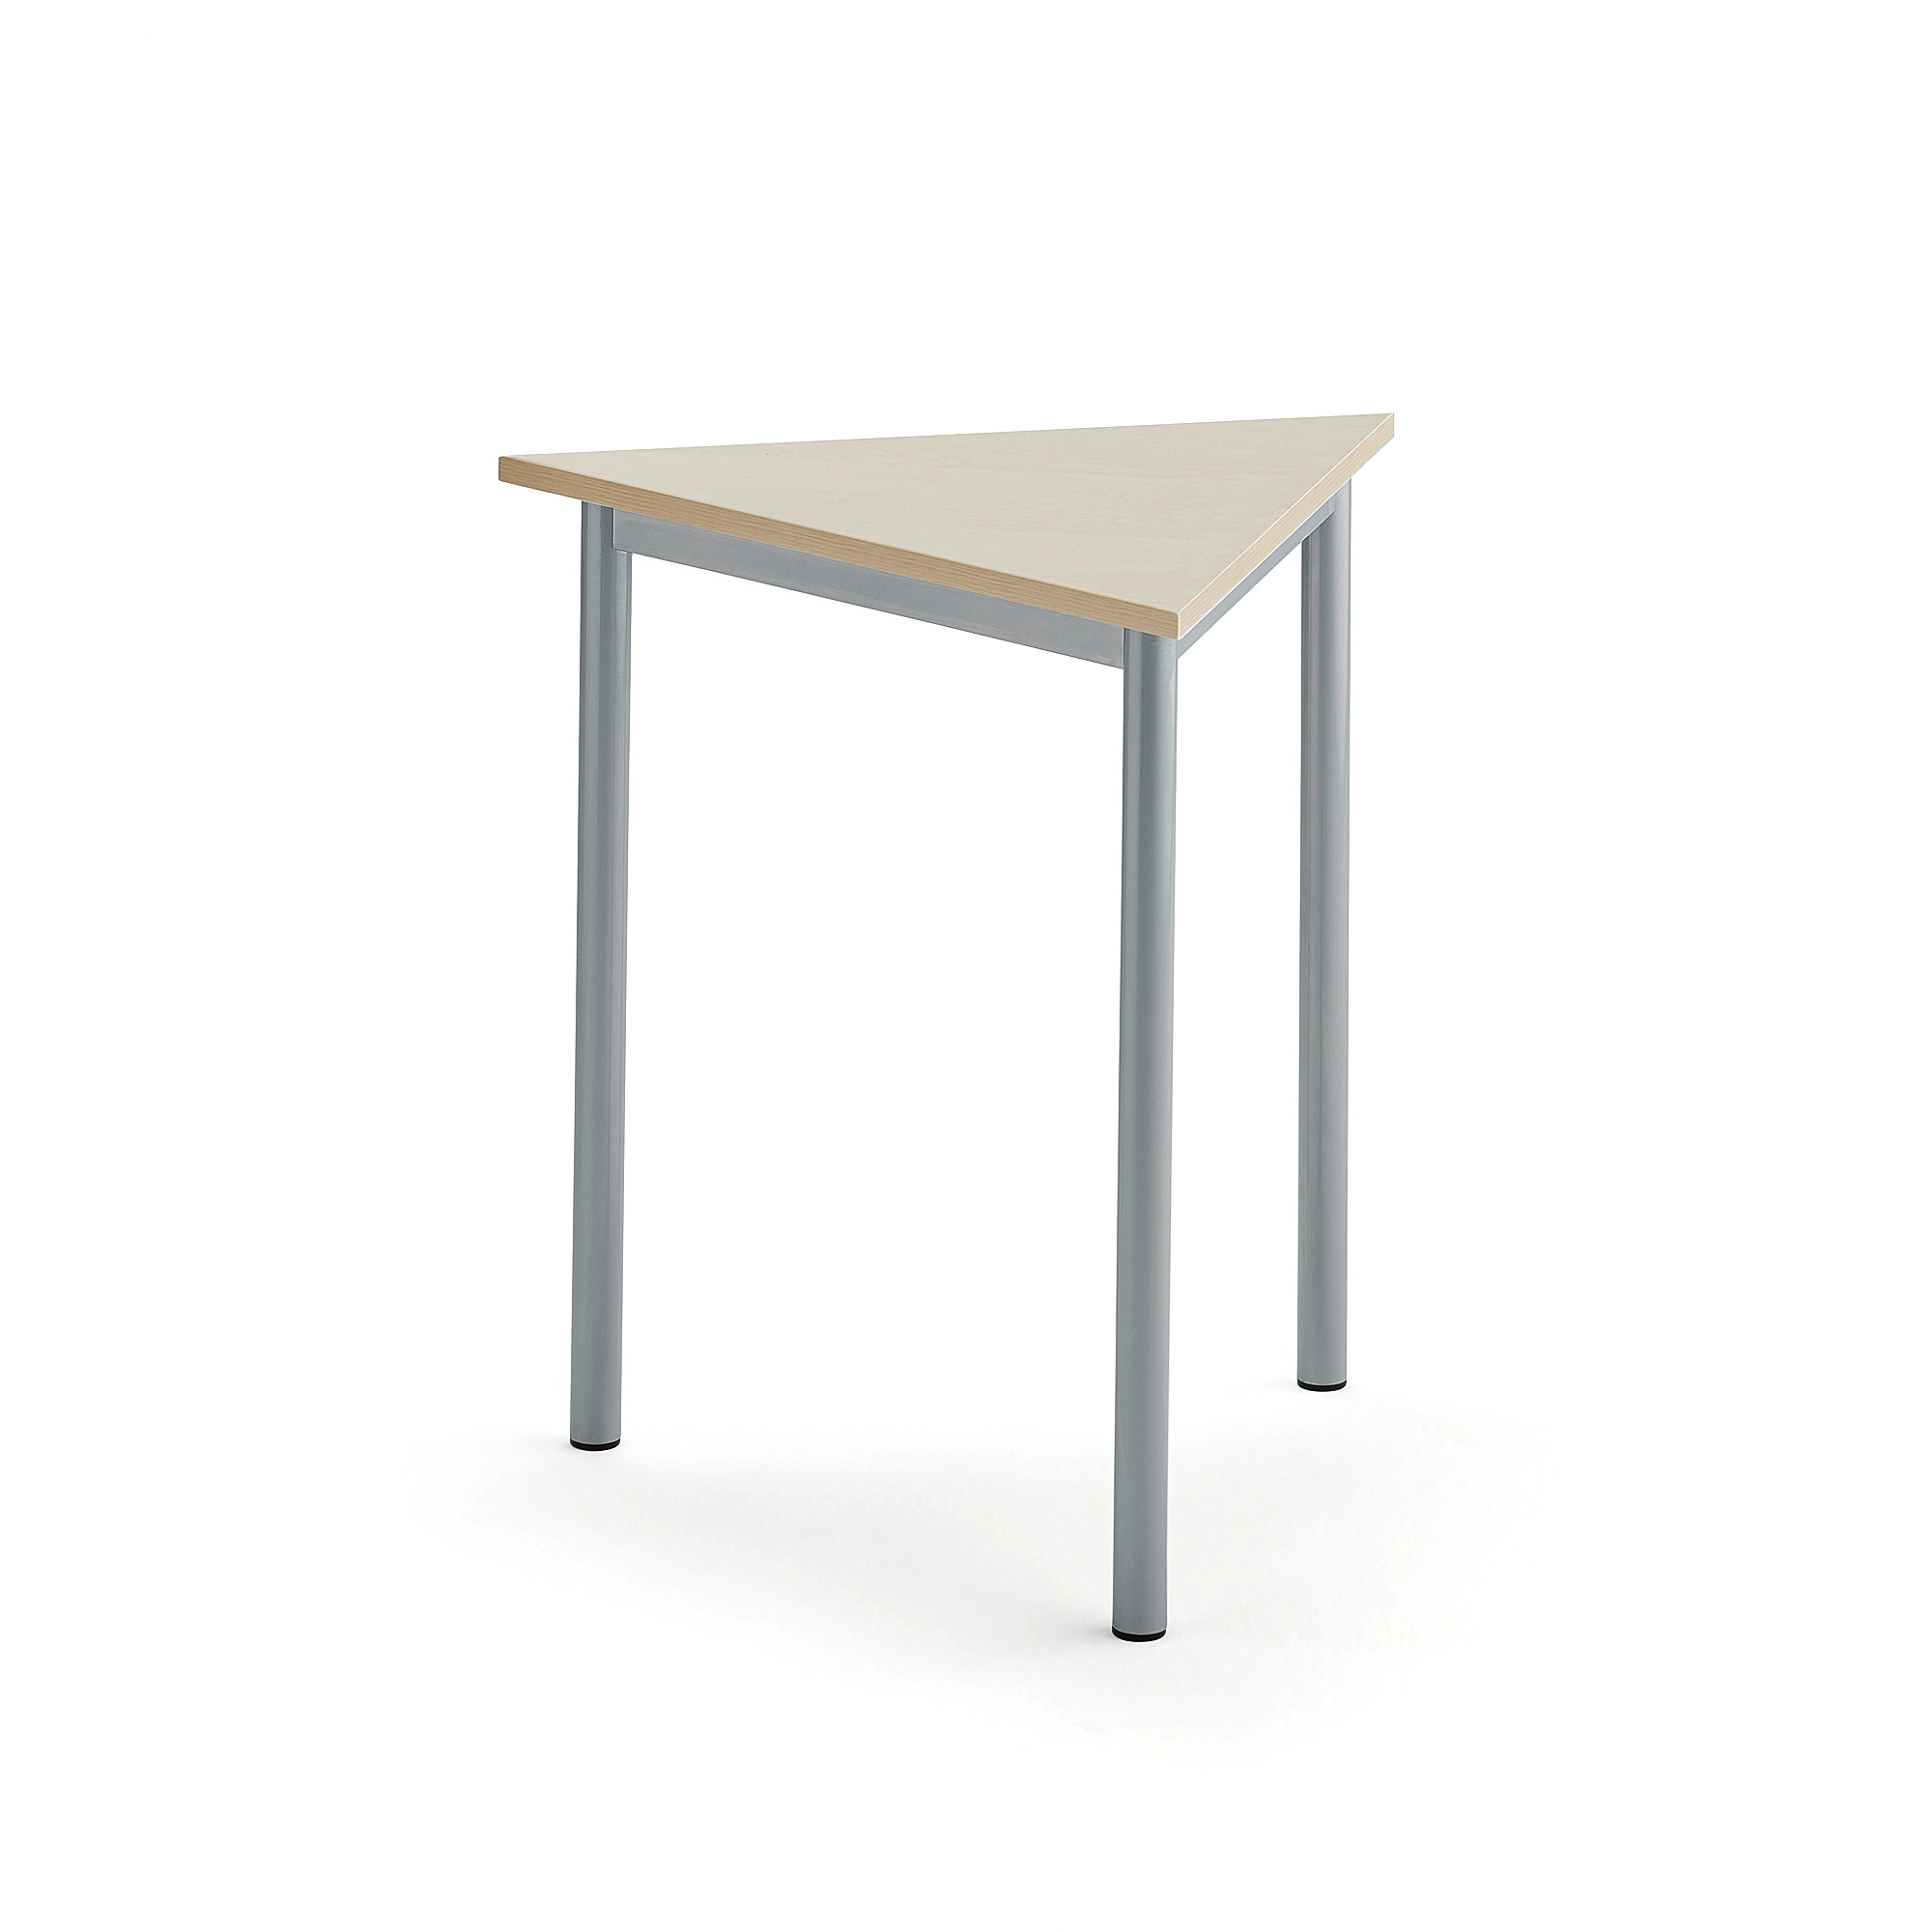 Stůl SONITUS TRIANGEL, 700x700x720 mm, stříbrné nohy, HPL deska tlumící hluk, bříza